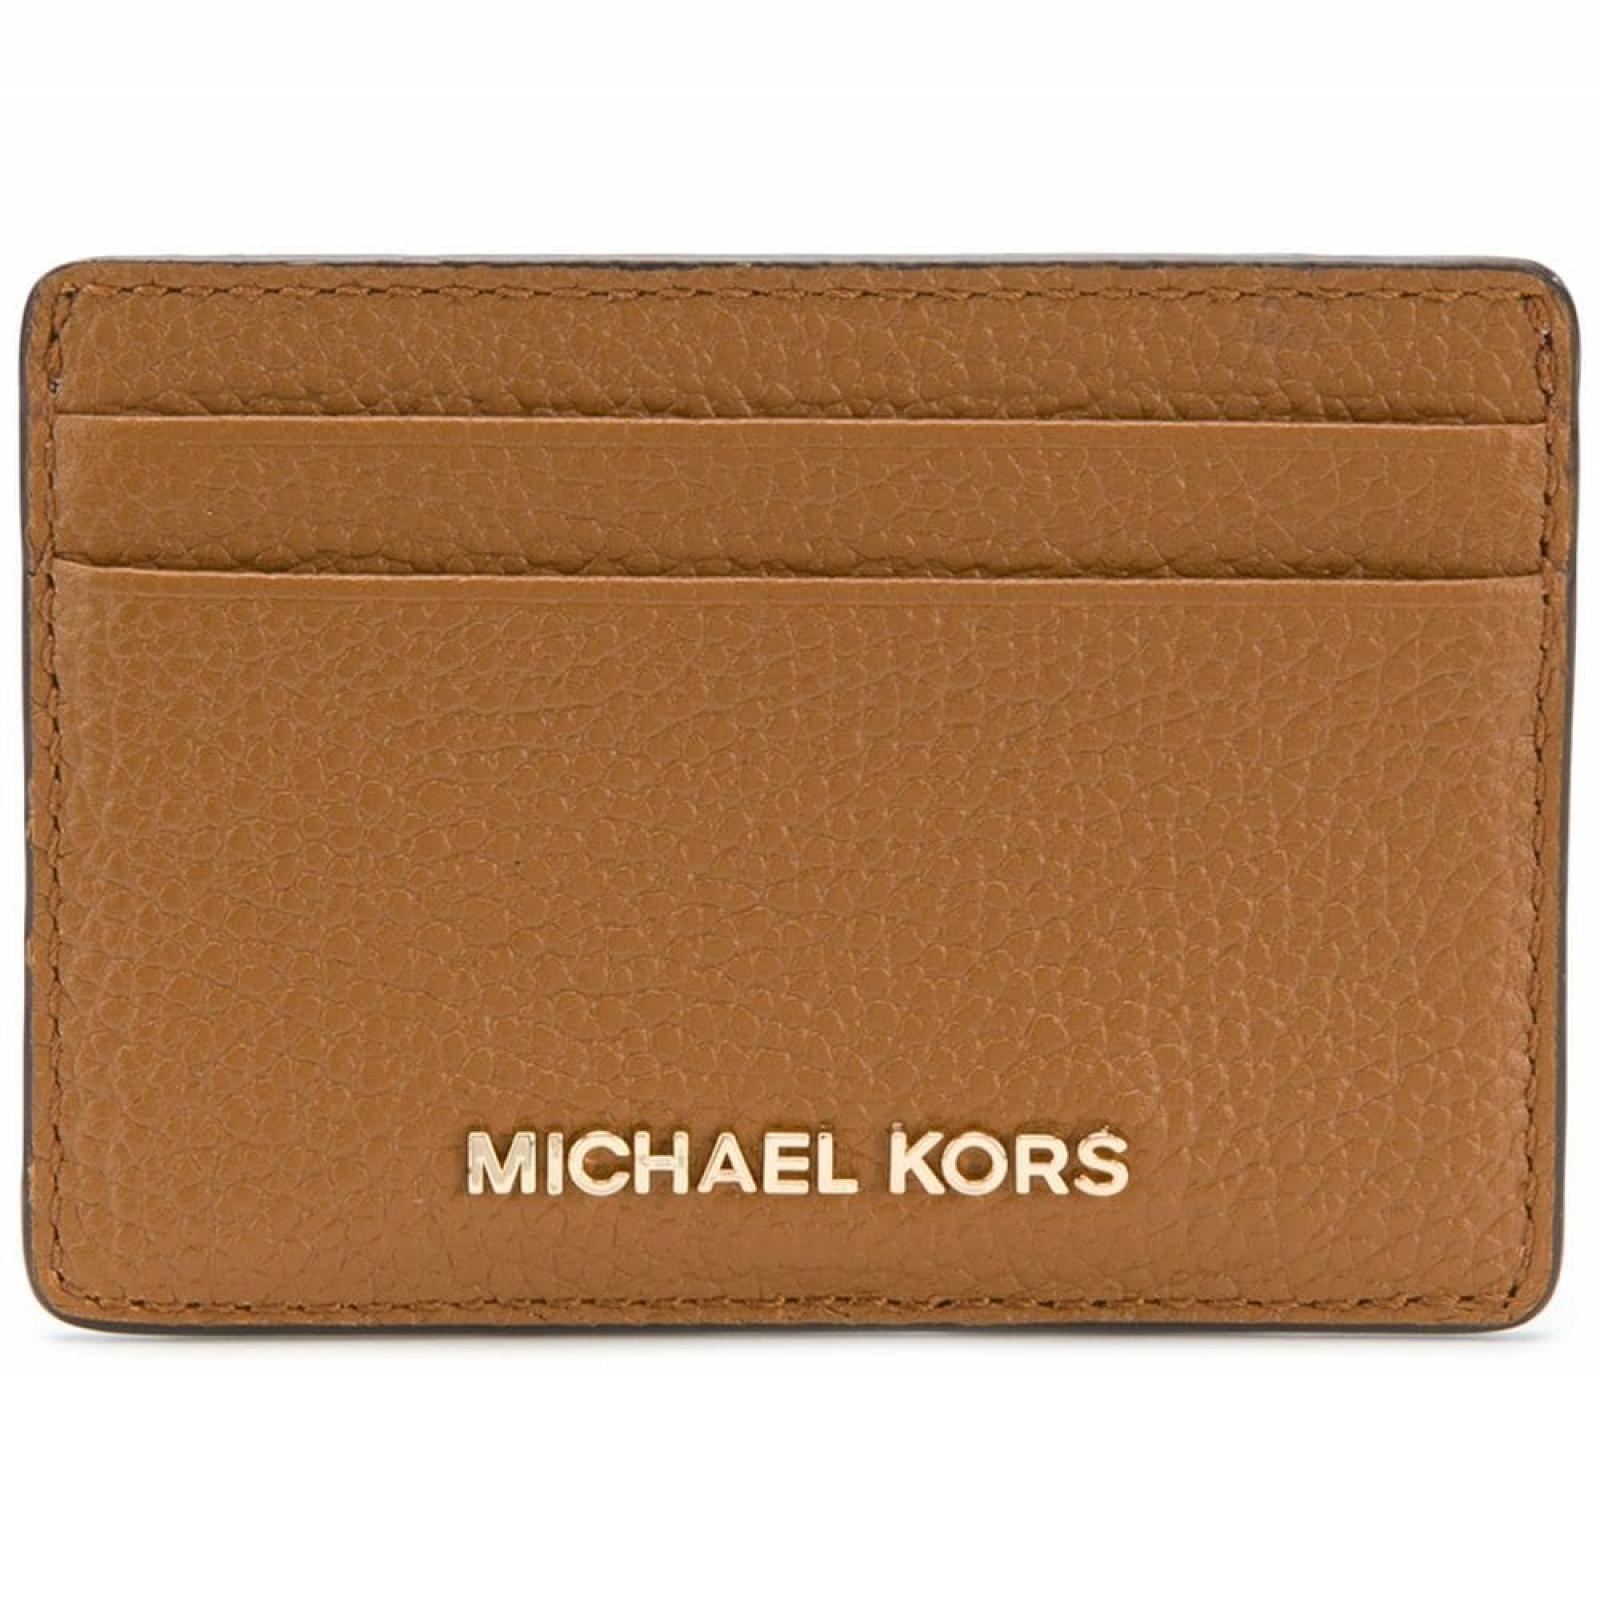 Michael Kors Card Holder Merce in leather - 1